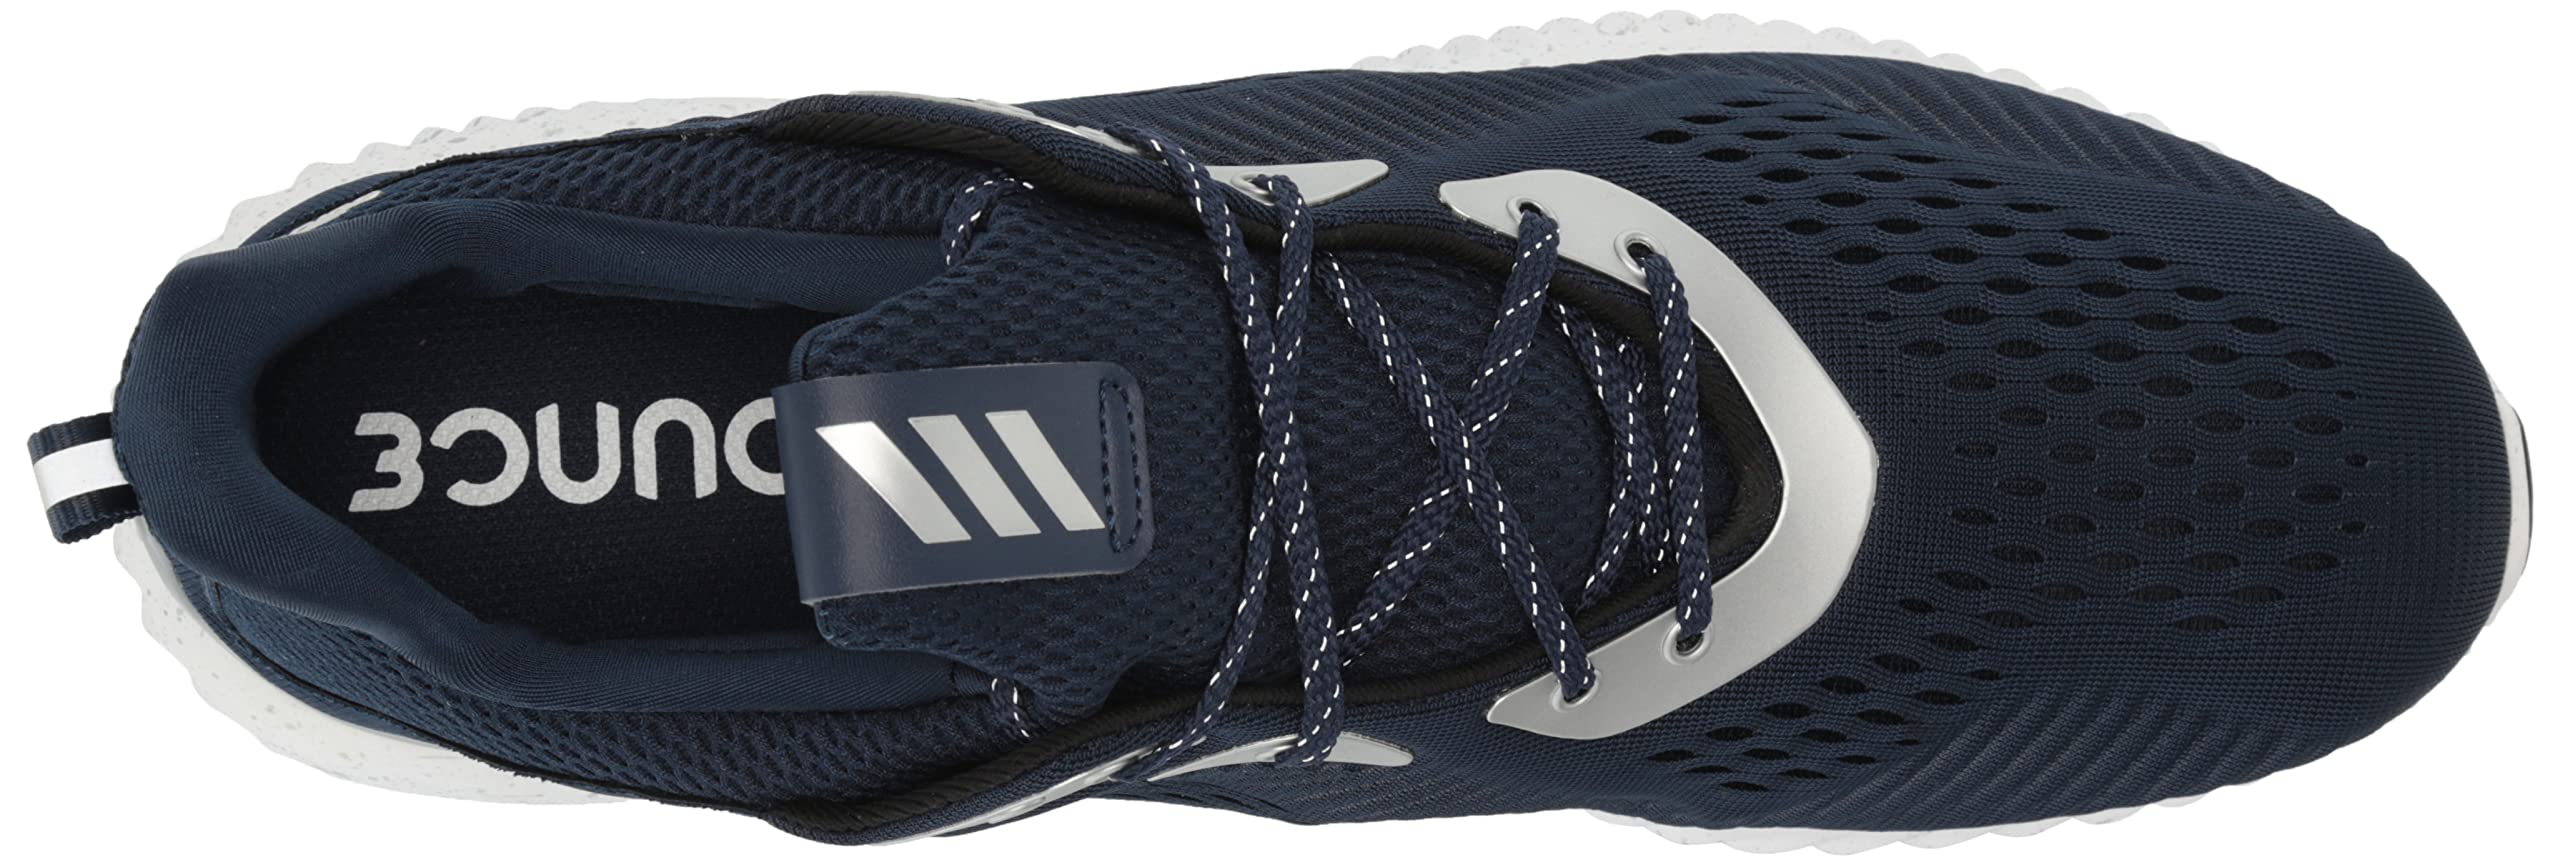 adidas Men's Alphabounce 1 Running Shoe